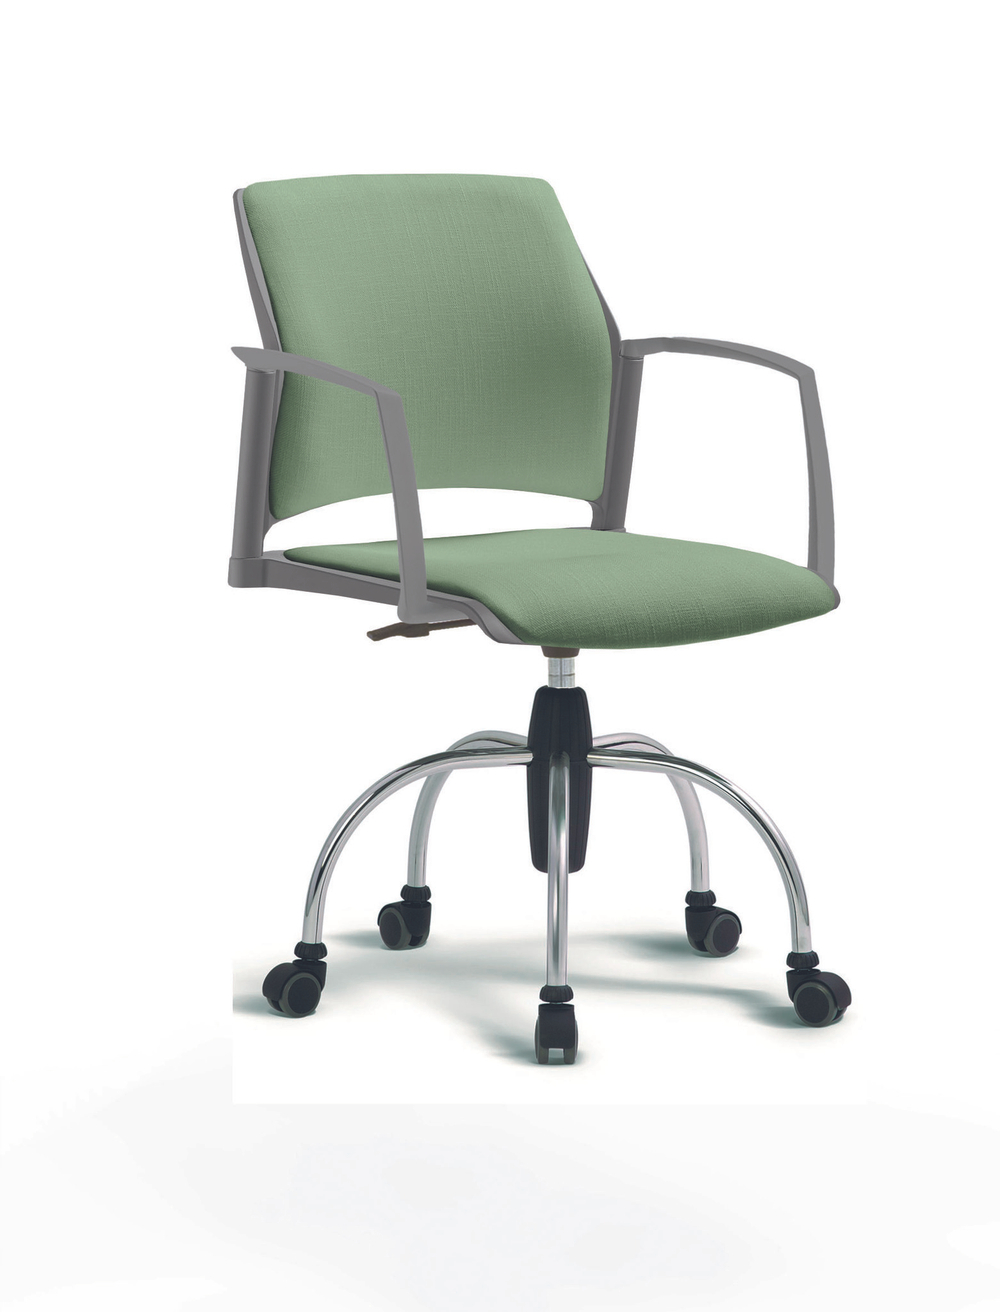 Кресло Rewind каркас хромированный, пластик серый, база паук хромированная, с закрытыми подлокотниками, сидение и спинка бледно-зеленое